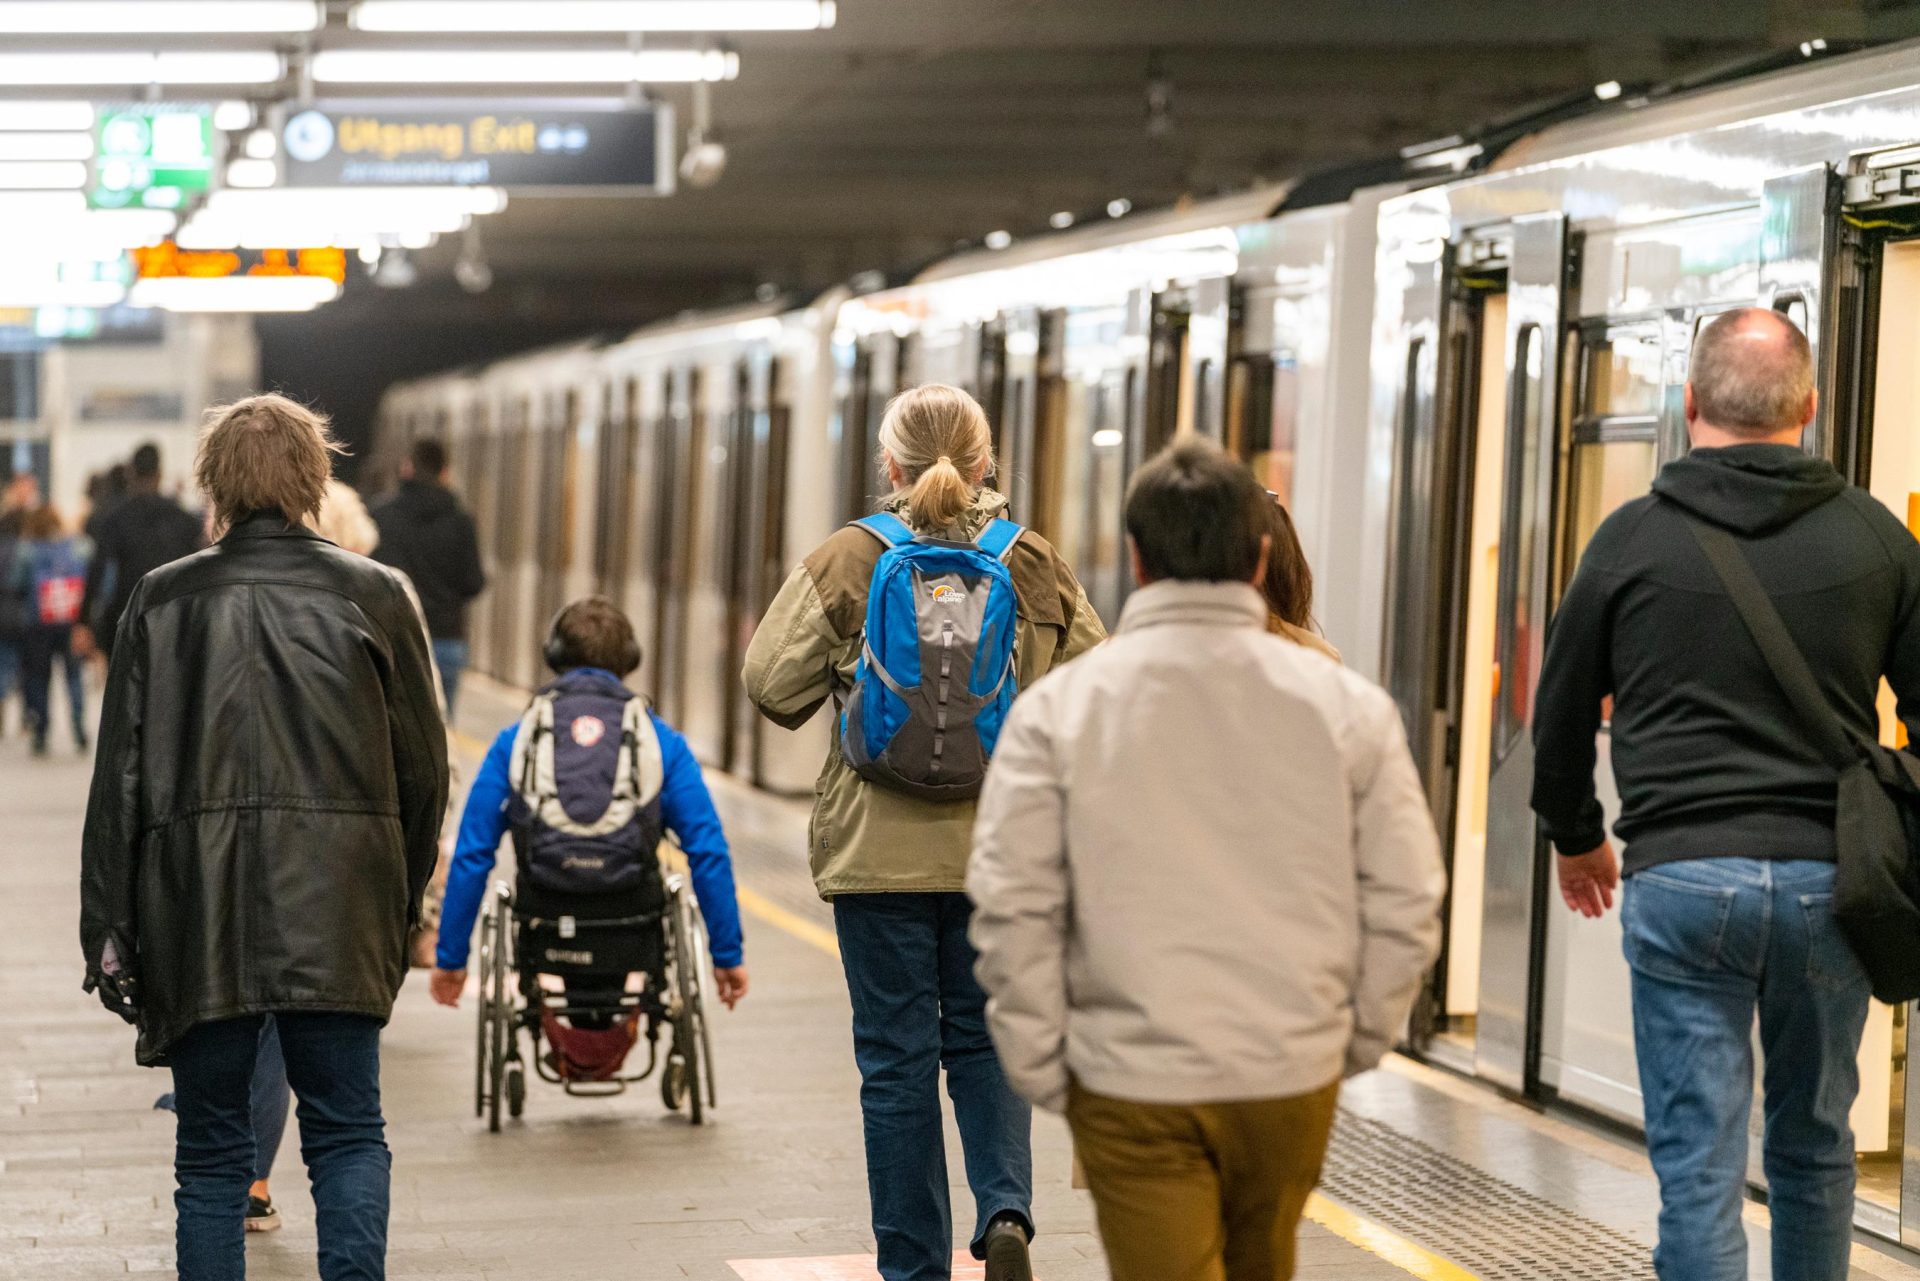 Passasjerer som går på en T-baneplattform ved siden av et stillestående tog, inkludert en person i rullestol og andre med ryggsekker.